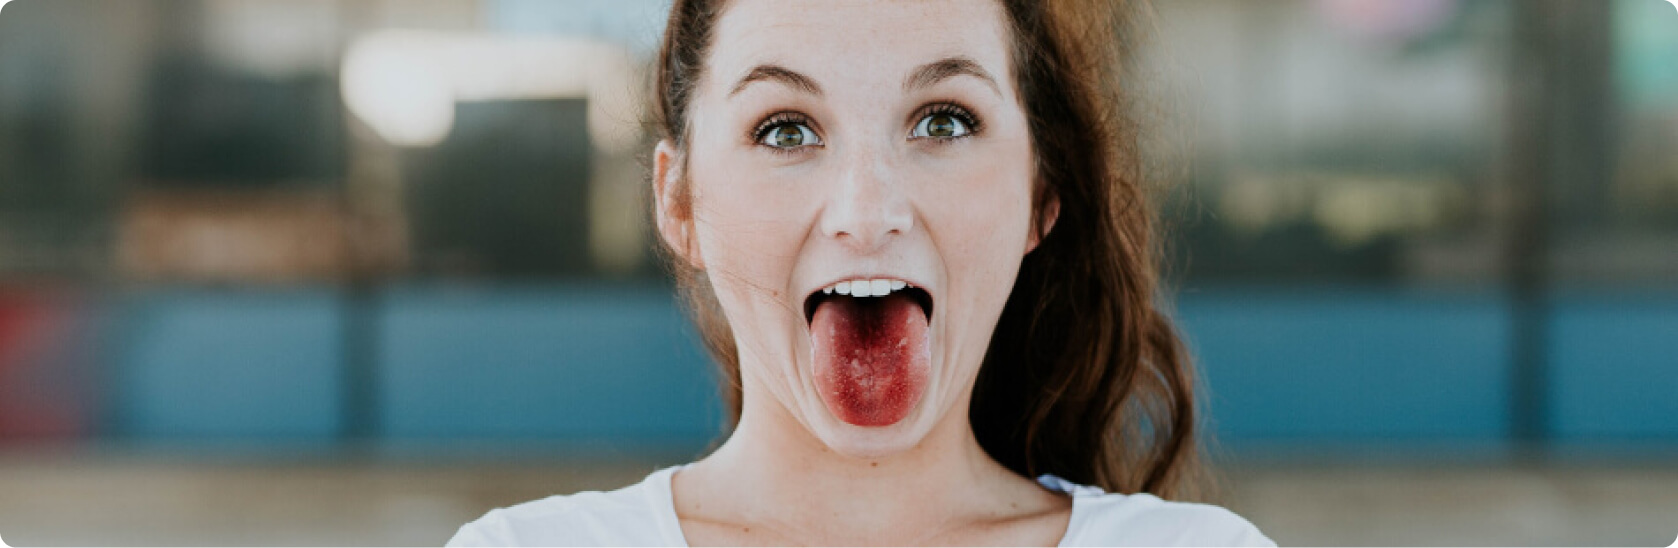 Zungenbelag - Was bedeutet eine rote Zunge?